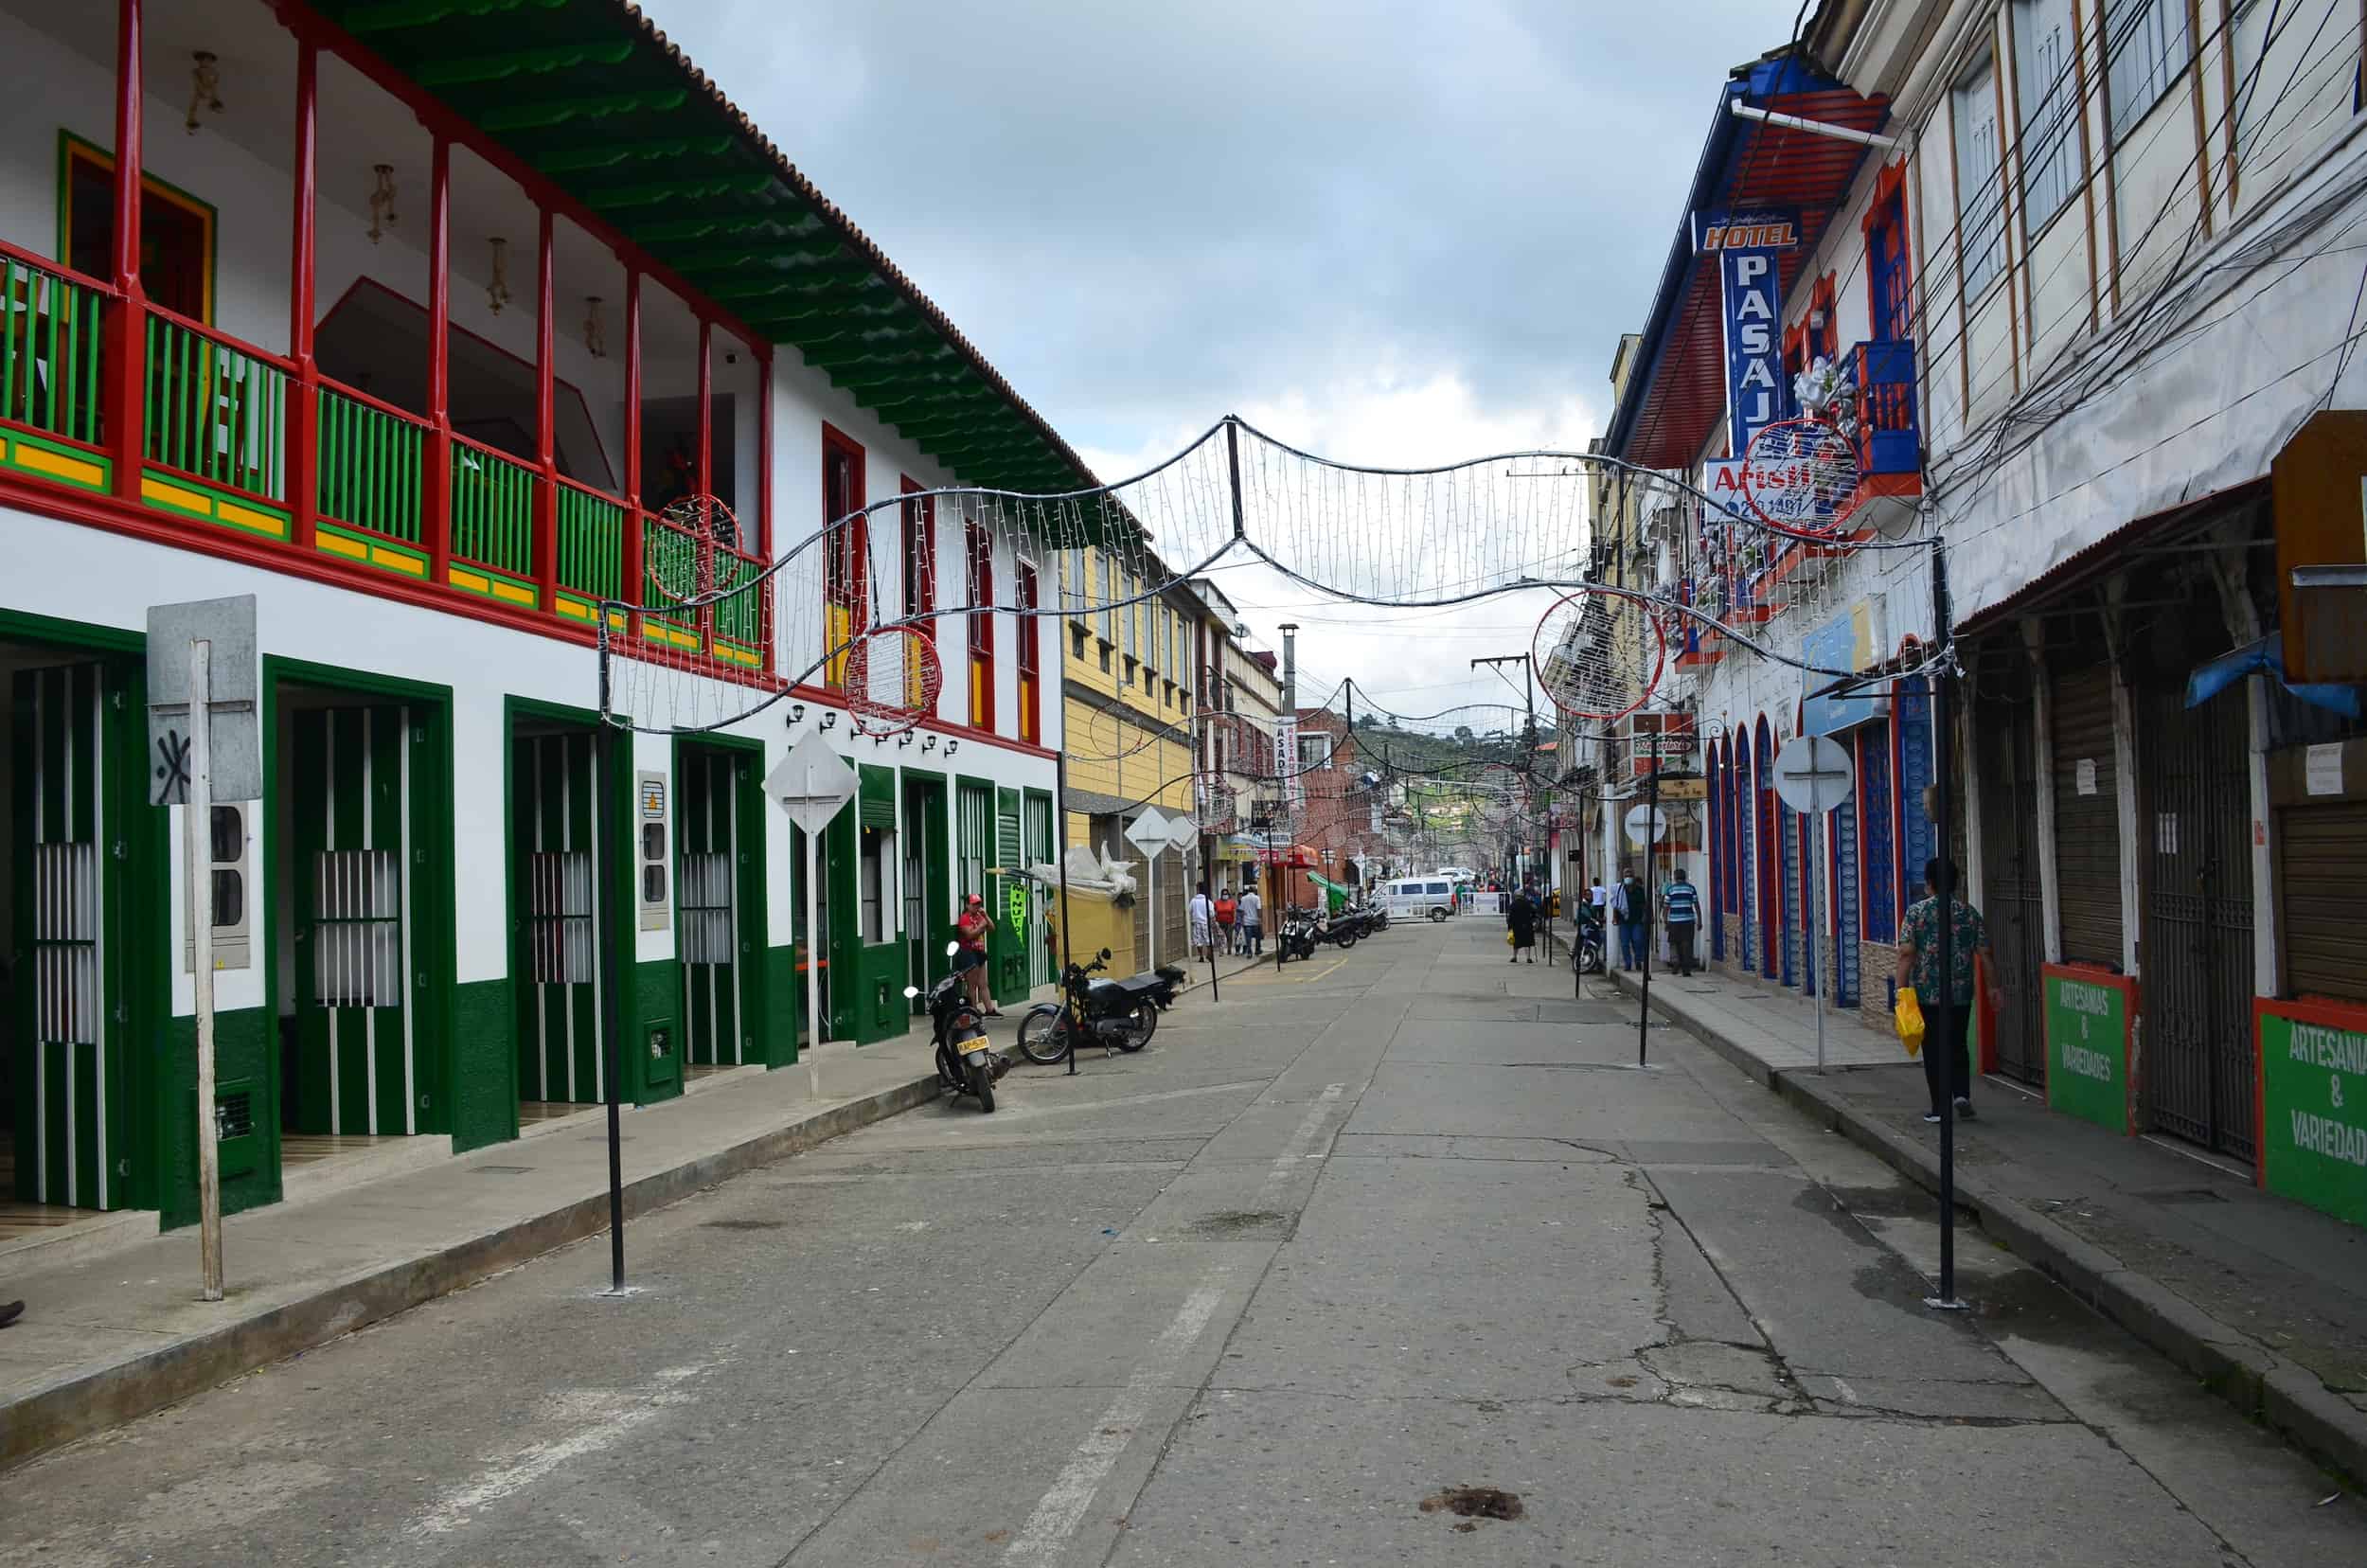 Calle 50 in Sevilla, Valle del Cauca, Colombia